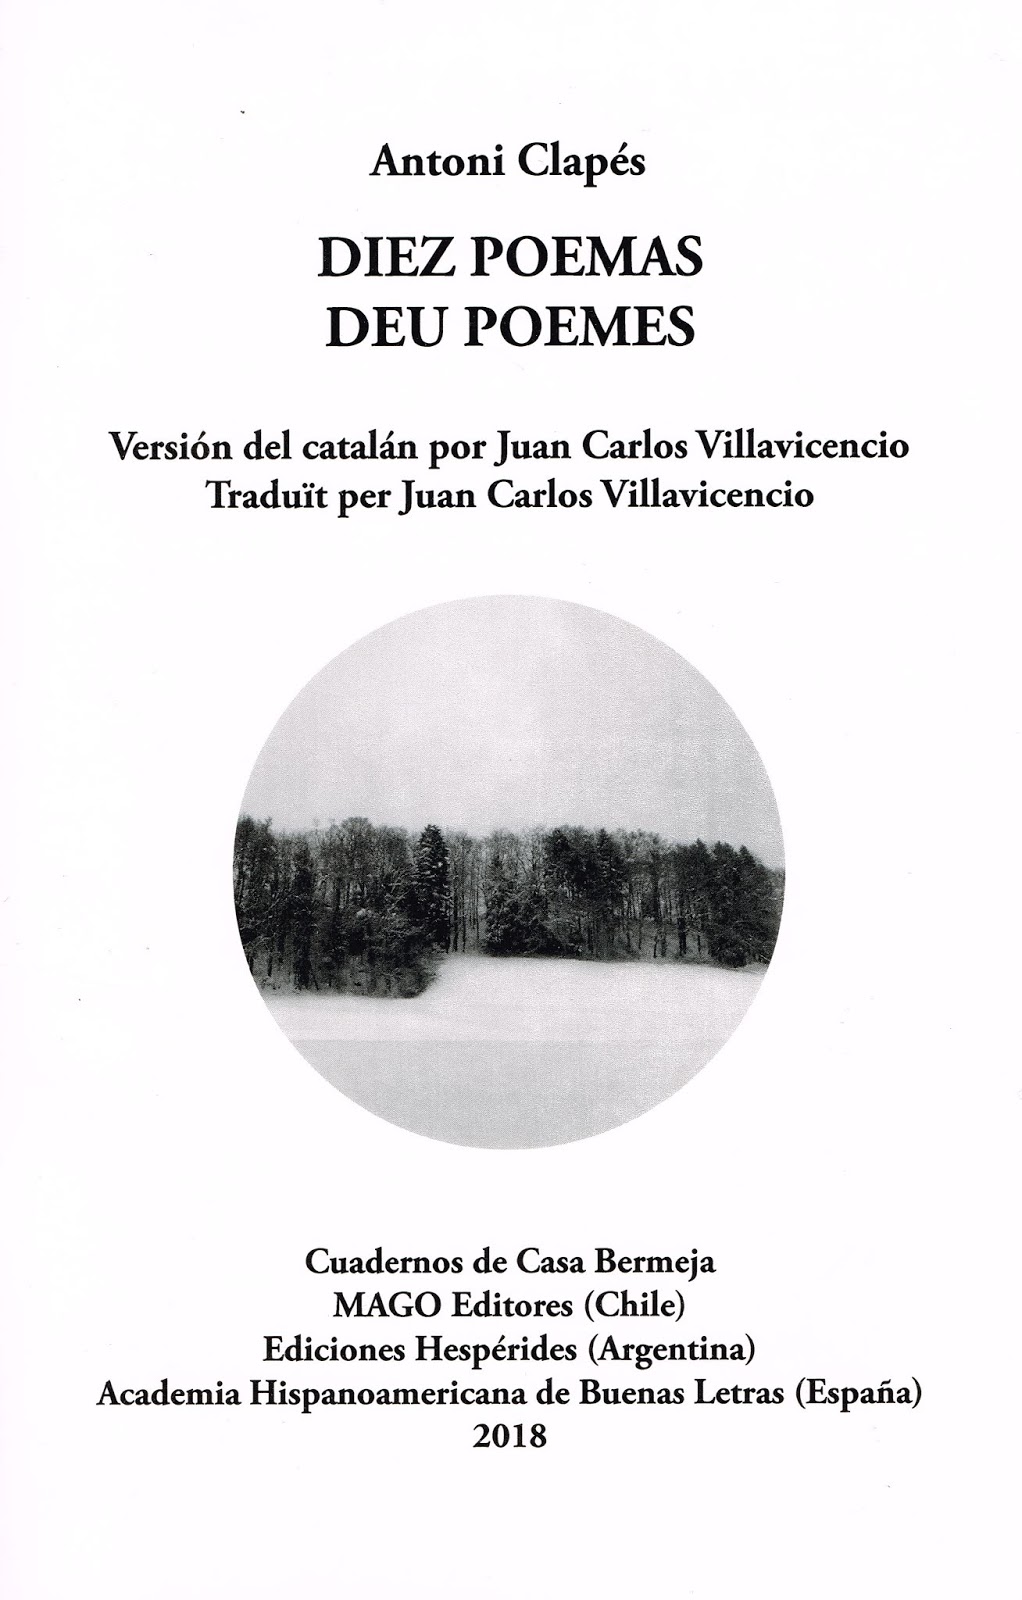 Diez poemas, de Antoni Clapés. Traducción de Juan Carlos Villavicencio